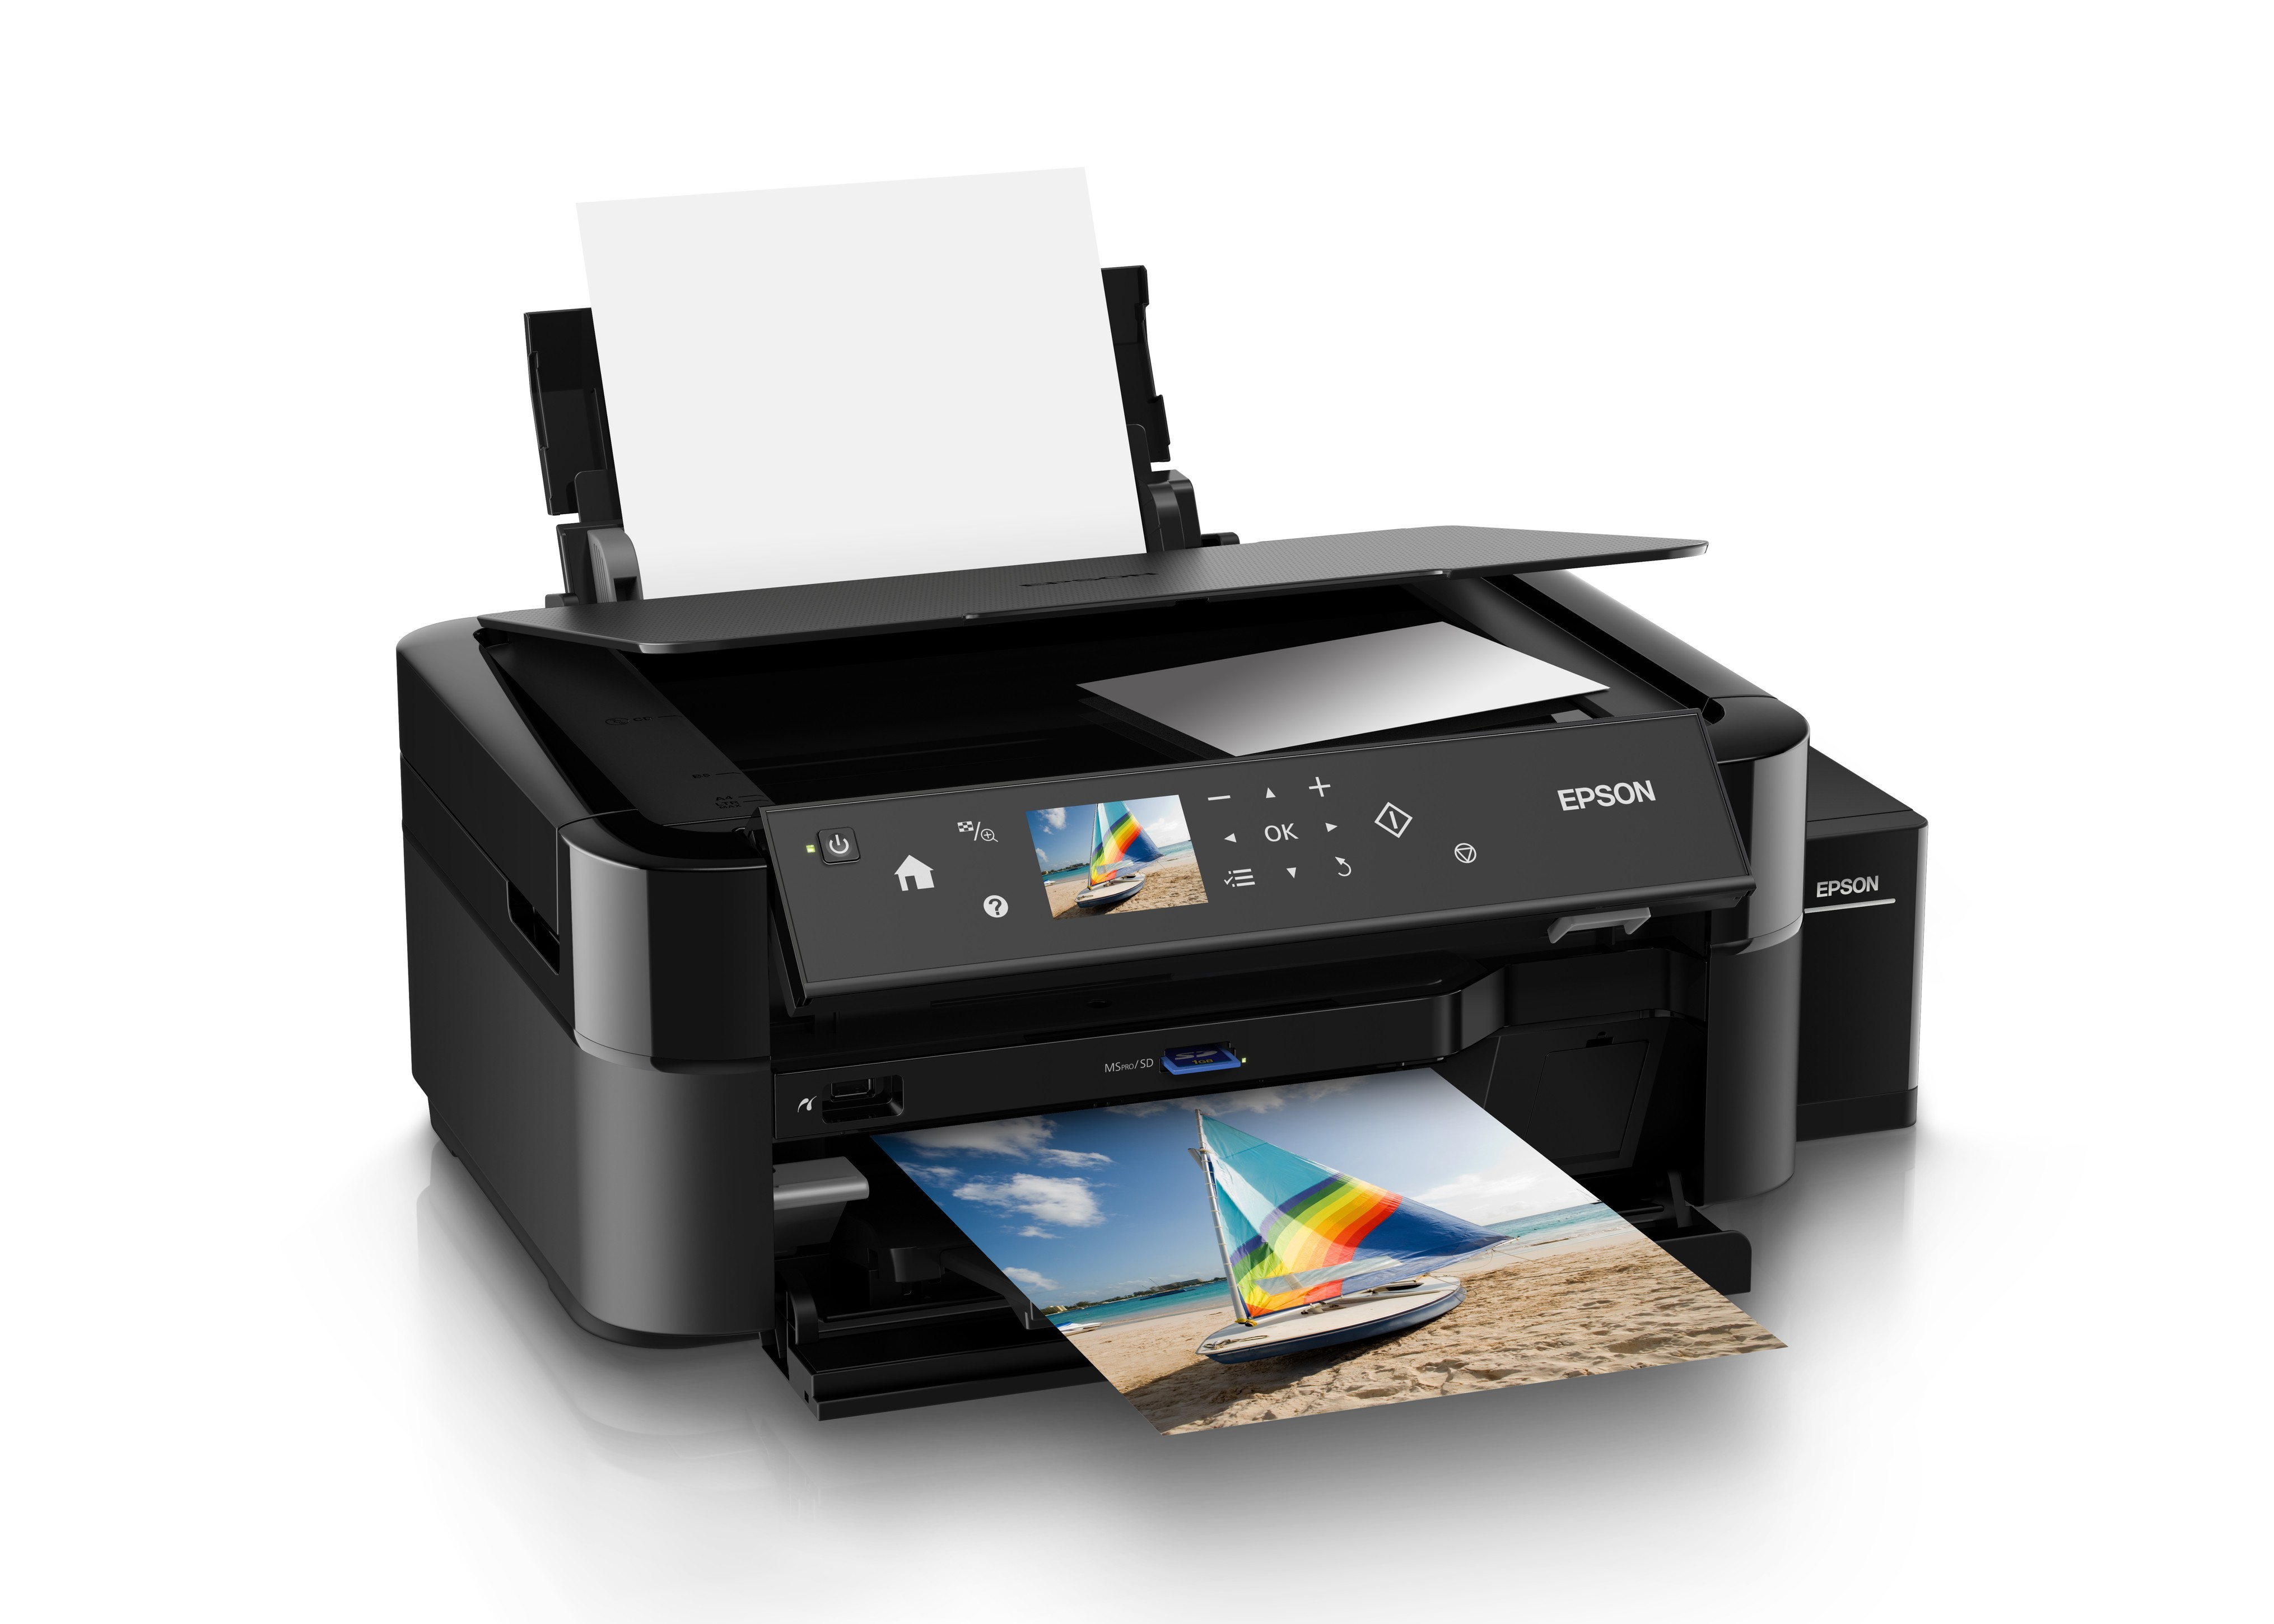 Лазерный принтер для фотографий. C11ce31402 МФУ Epson l850. Принтер Epson l850. Принтер Эпсон 850. МФУ струйный Epson l850.